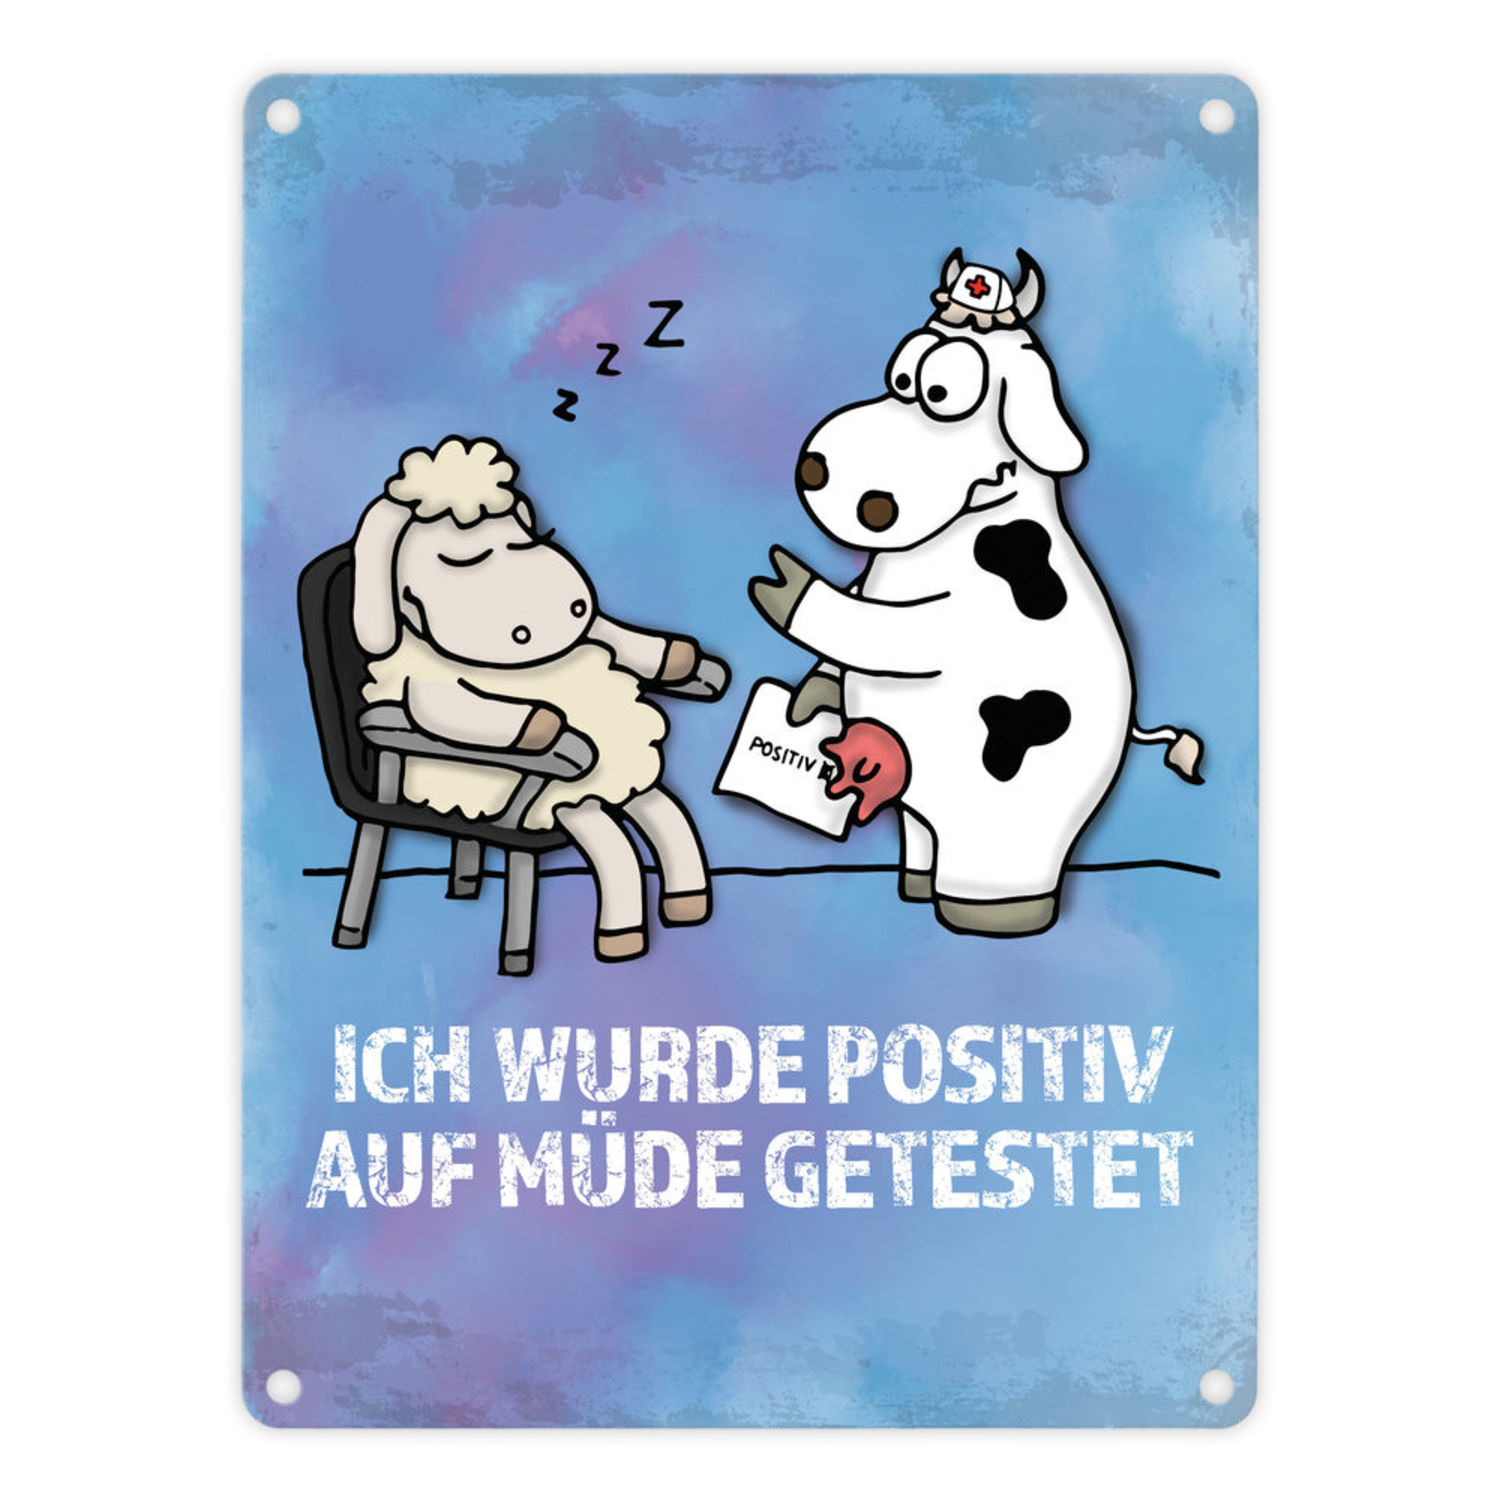 44++ Spruch muede , Metallschild mit Schaf und Kuh Motiv und Spruch Positiv auf Müde getestet bei trendaffe.de